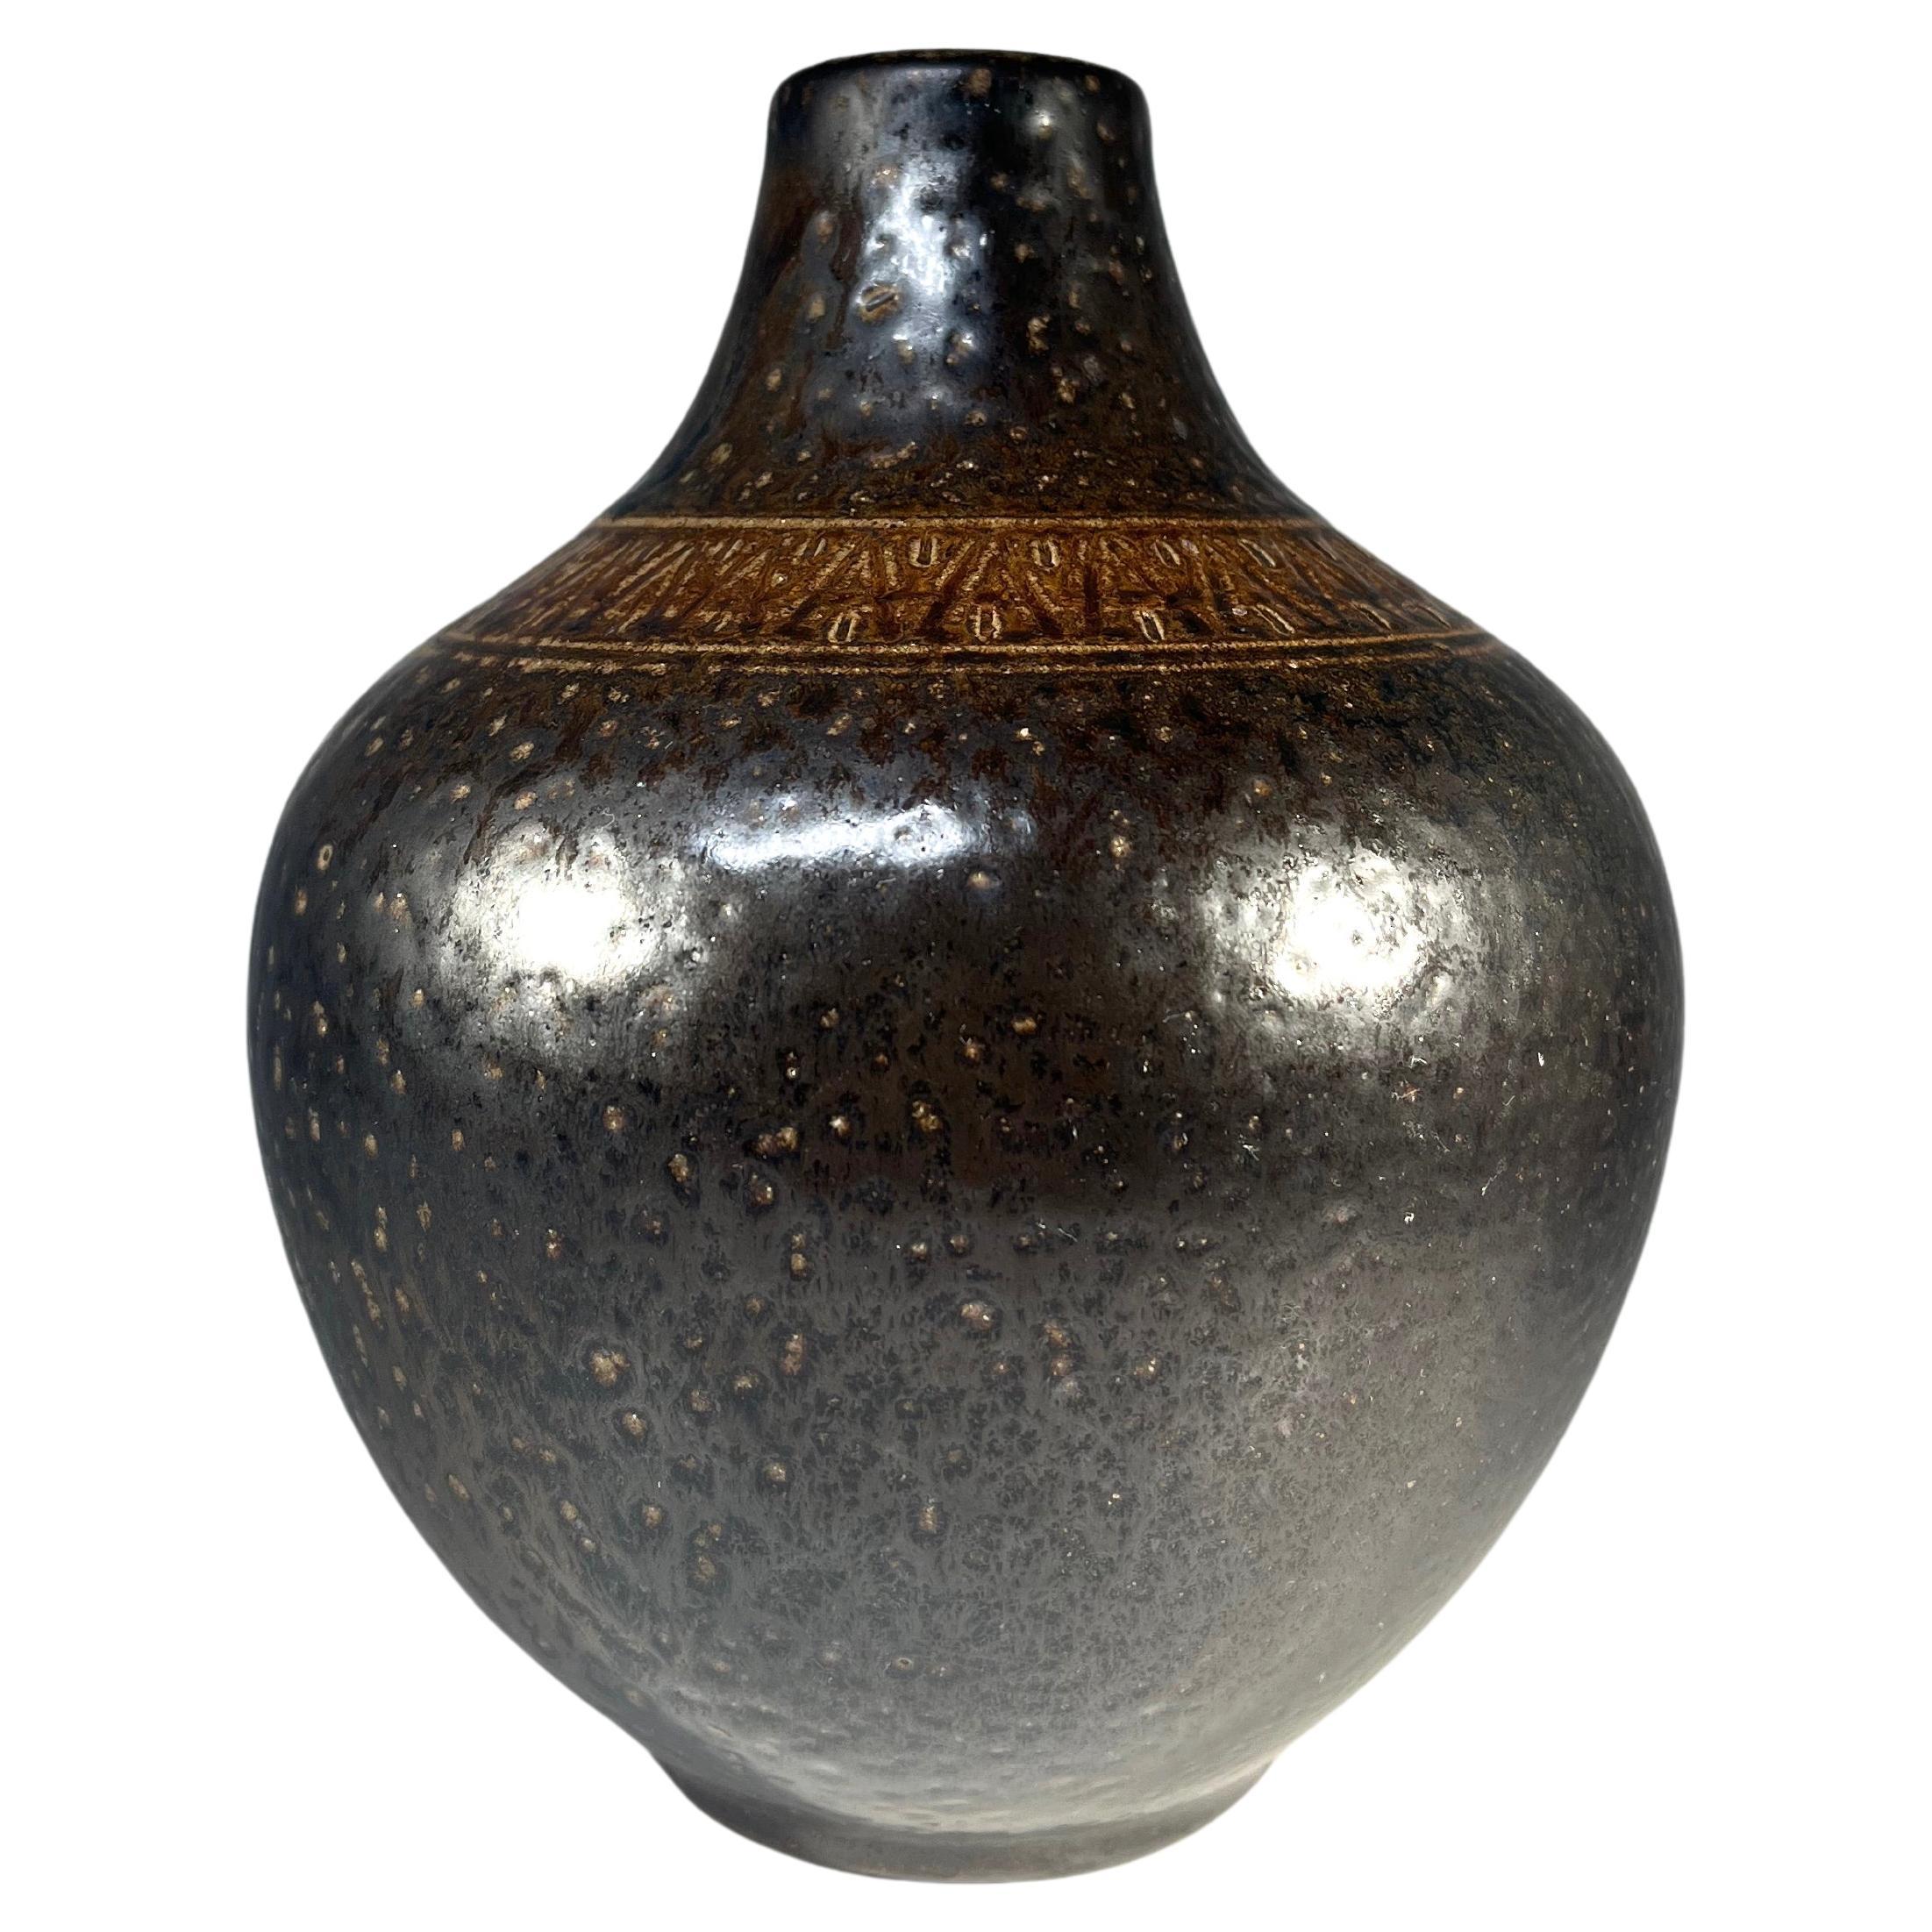 Arthur Andersson For Wallåkra, Sweden, Shaped Stoneware Vase c1950's